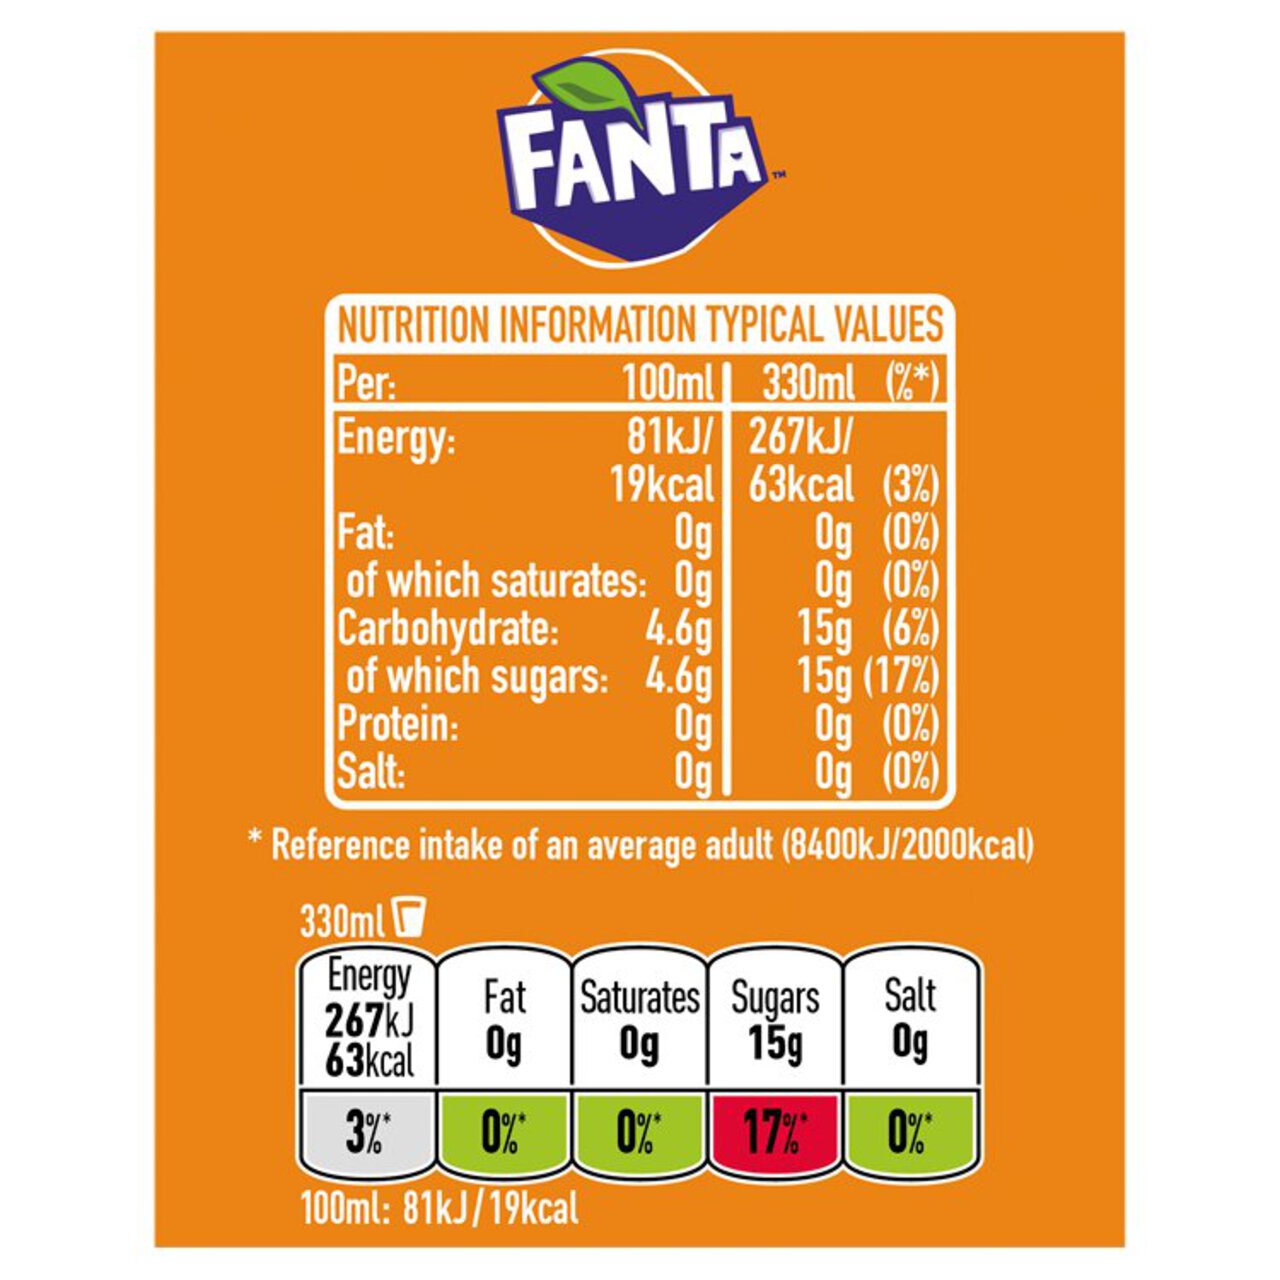 Fanta Orange 8 x 330ml